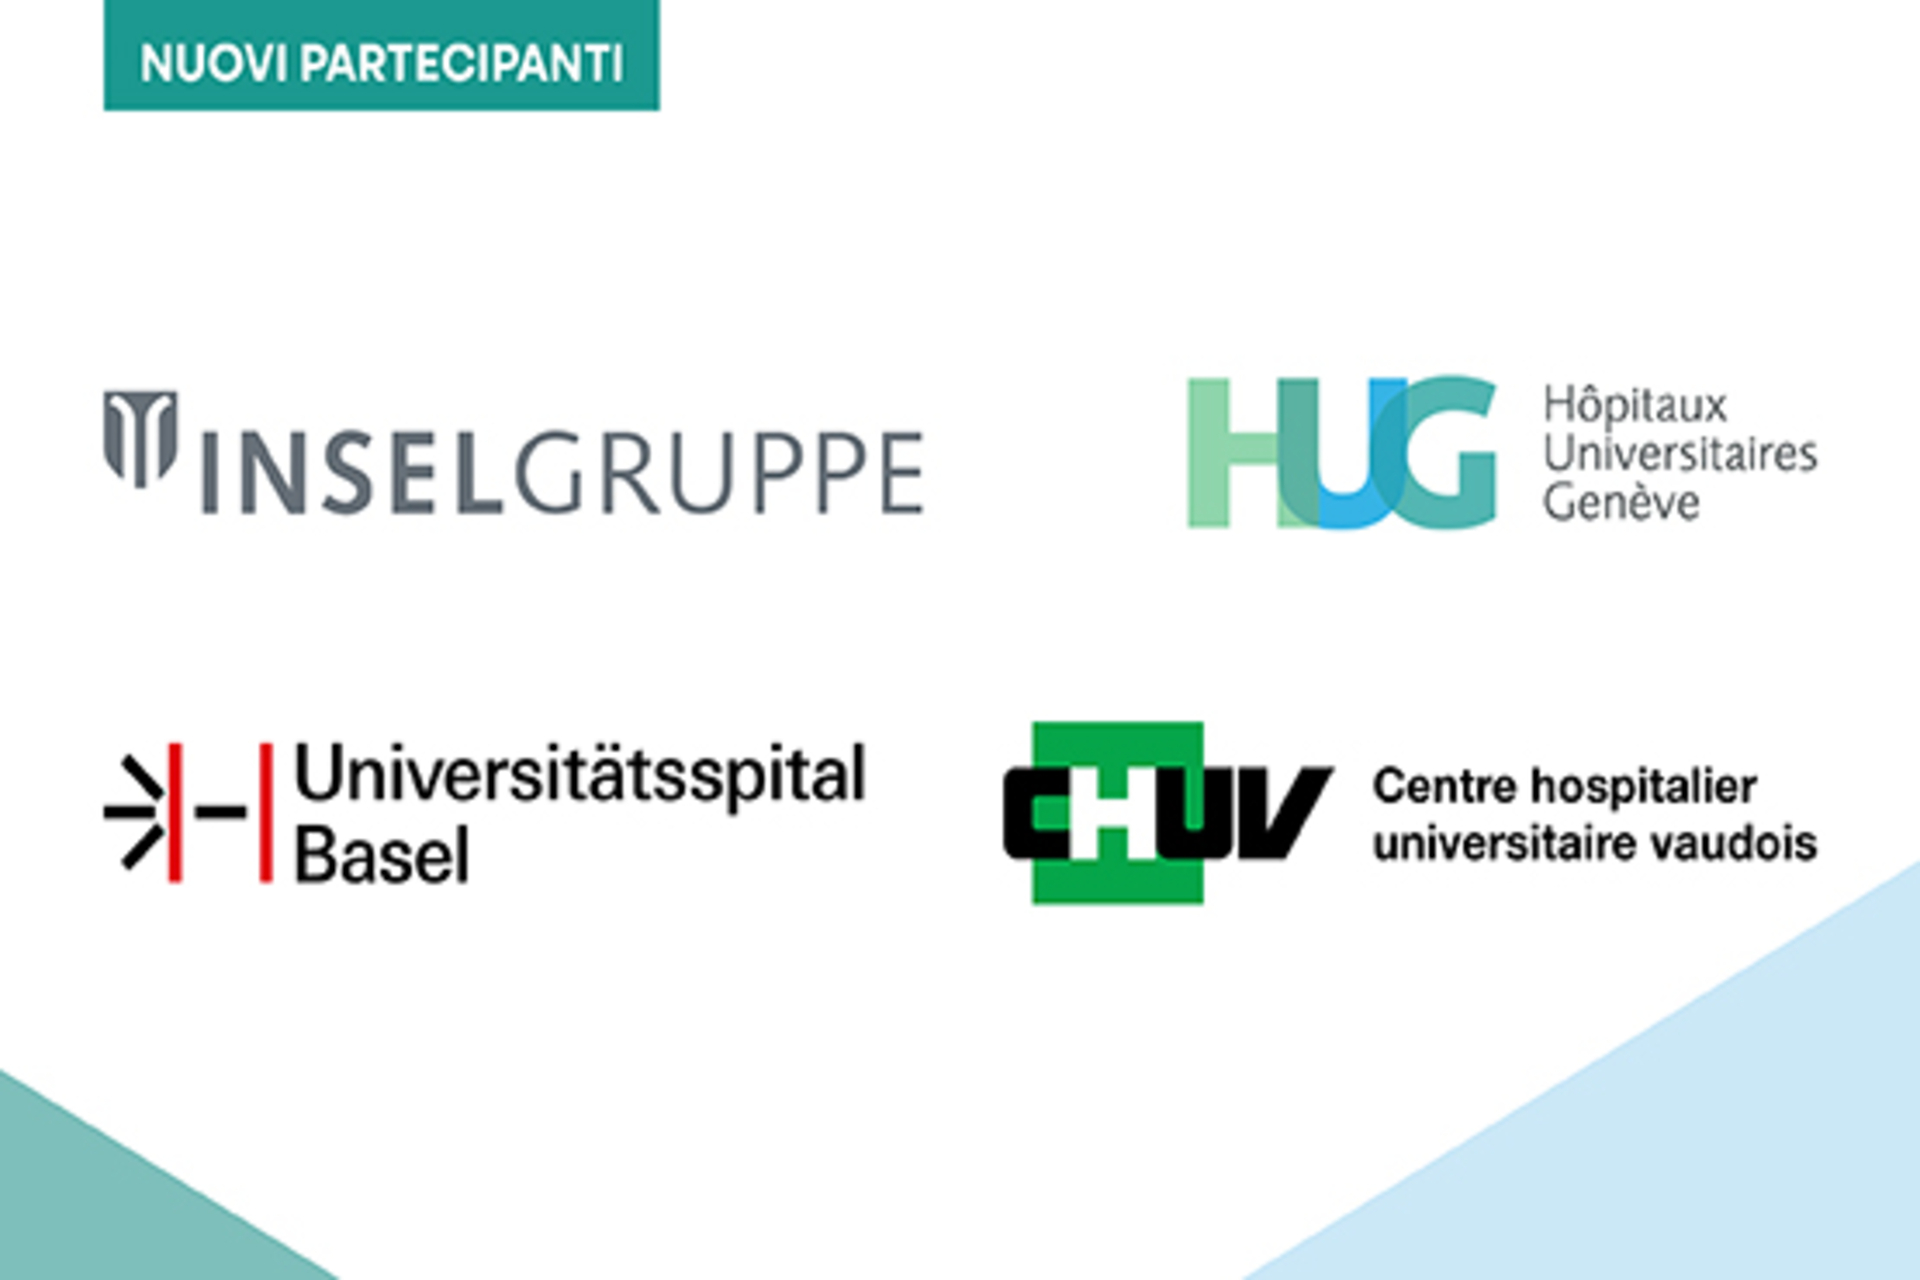 Ospedali universitari: i logotipi dei quattro ospedali universitari delle città di Basilea, Berna, Losanna e Ginevra che hanno aderito all'iniziativa della Confederazione Svizzera "Energia e Clima Esemplari"